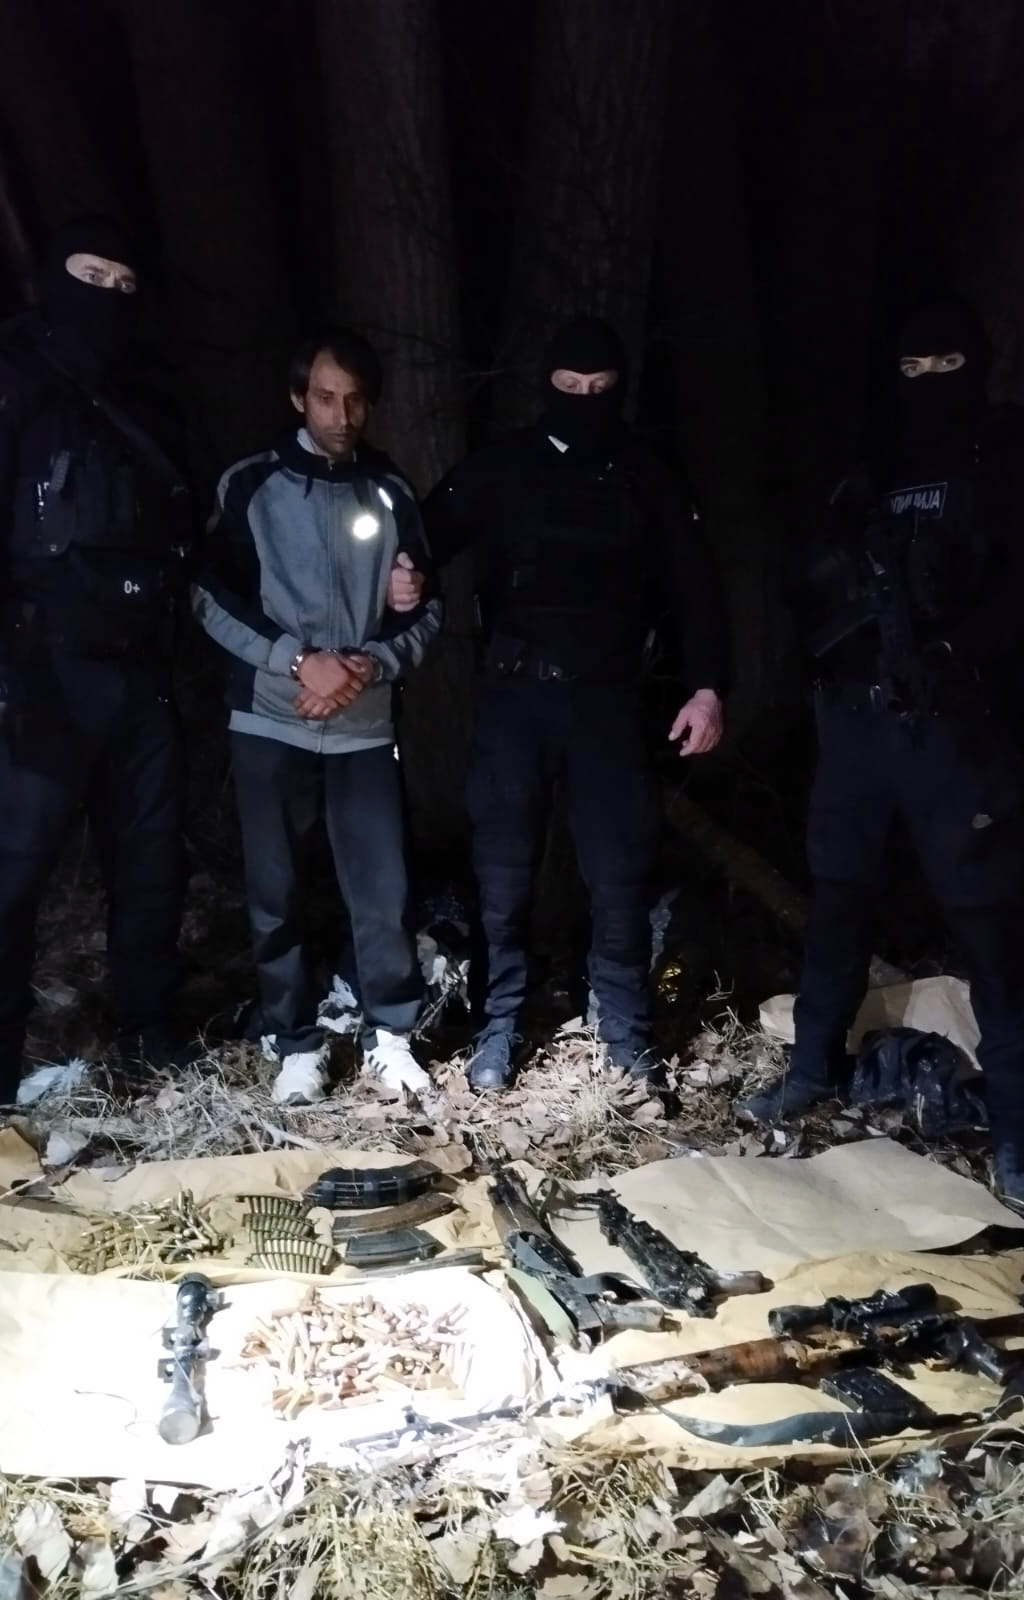 Uhapšen Avganistanac zbog sumnje da je učestvovao u krijumčarenju migranata u Srbiji, MUP nastavlja potragu za ostalim članovima kriminalne grupe 2